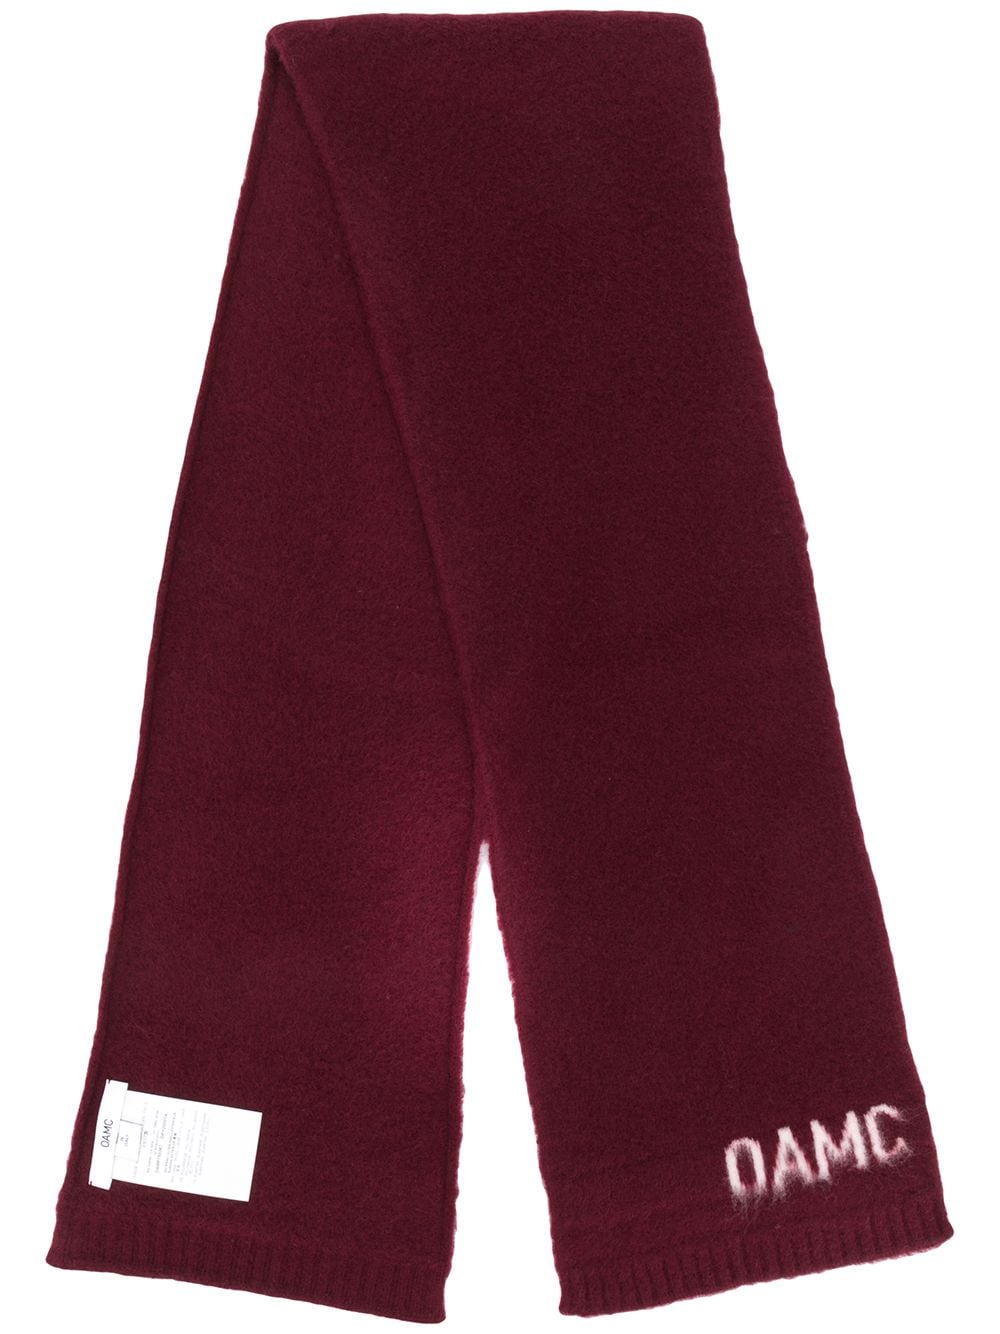 OAMC шарф с контрастным логотипом